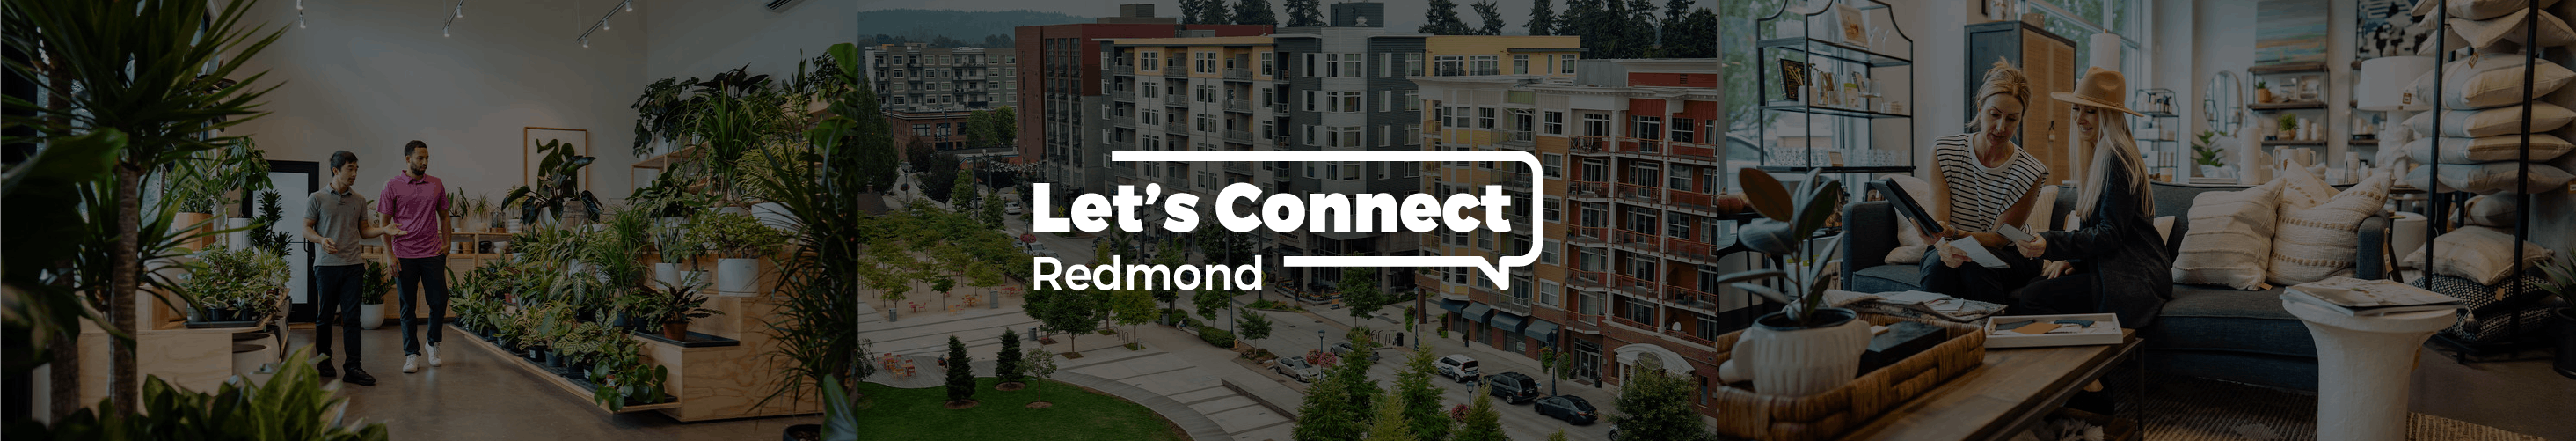 Let's Connect Redmond - Economic Development Strategic Action Plan